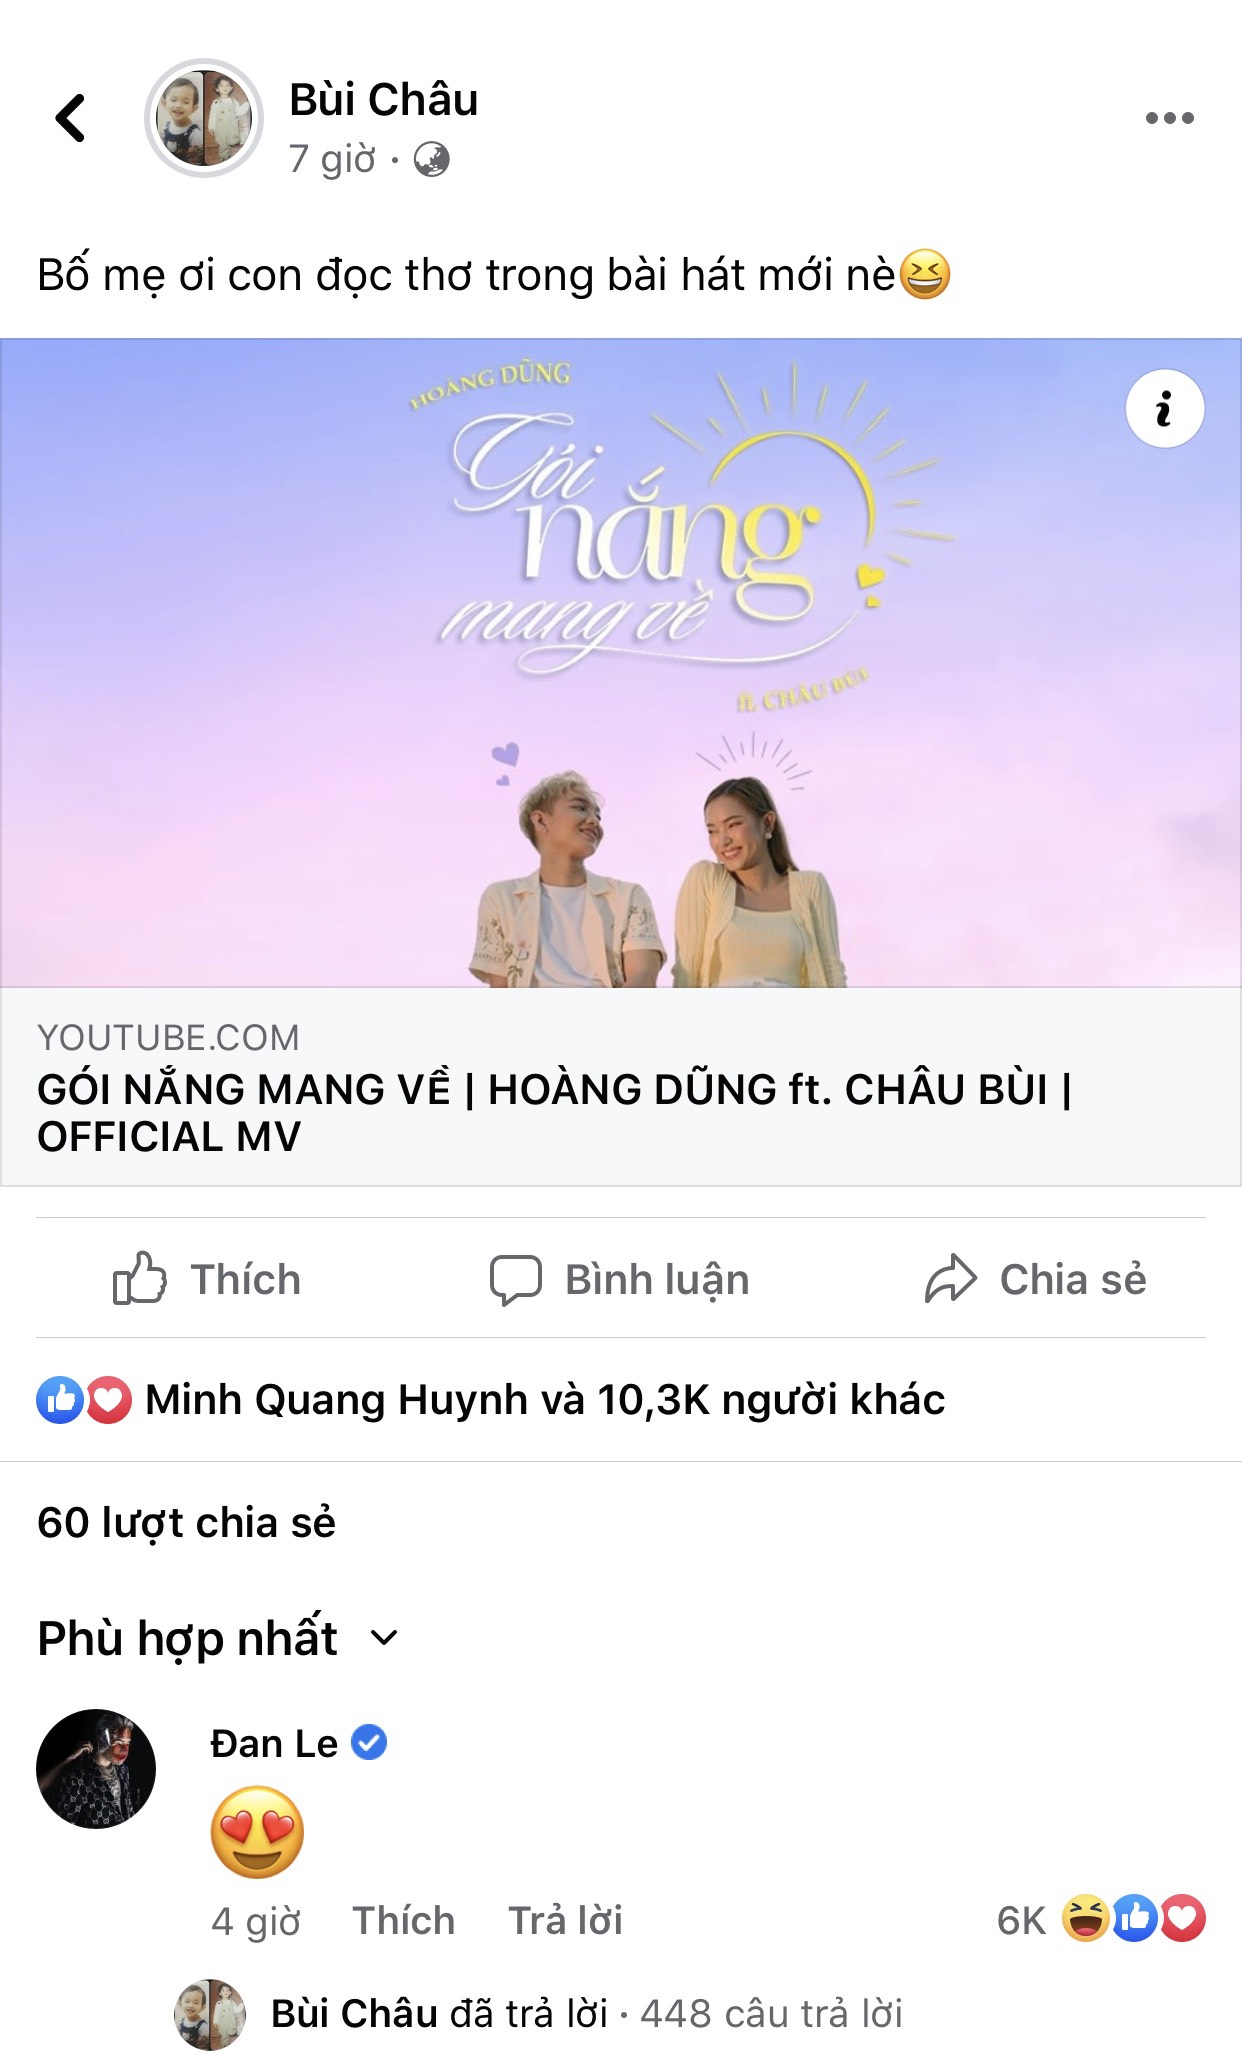 Binz công khai bày tỏ ủng hộ bạn gái bằng biểu tượng cảm xúc tình yêu ngay dưới bài chia sẻ MV mới đây của Châu Bùi.